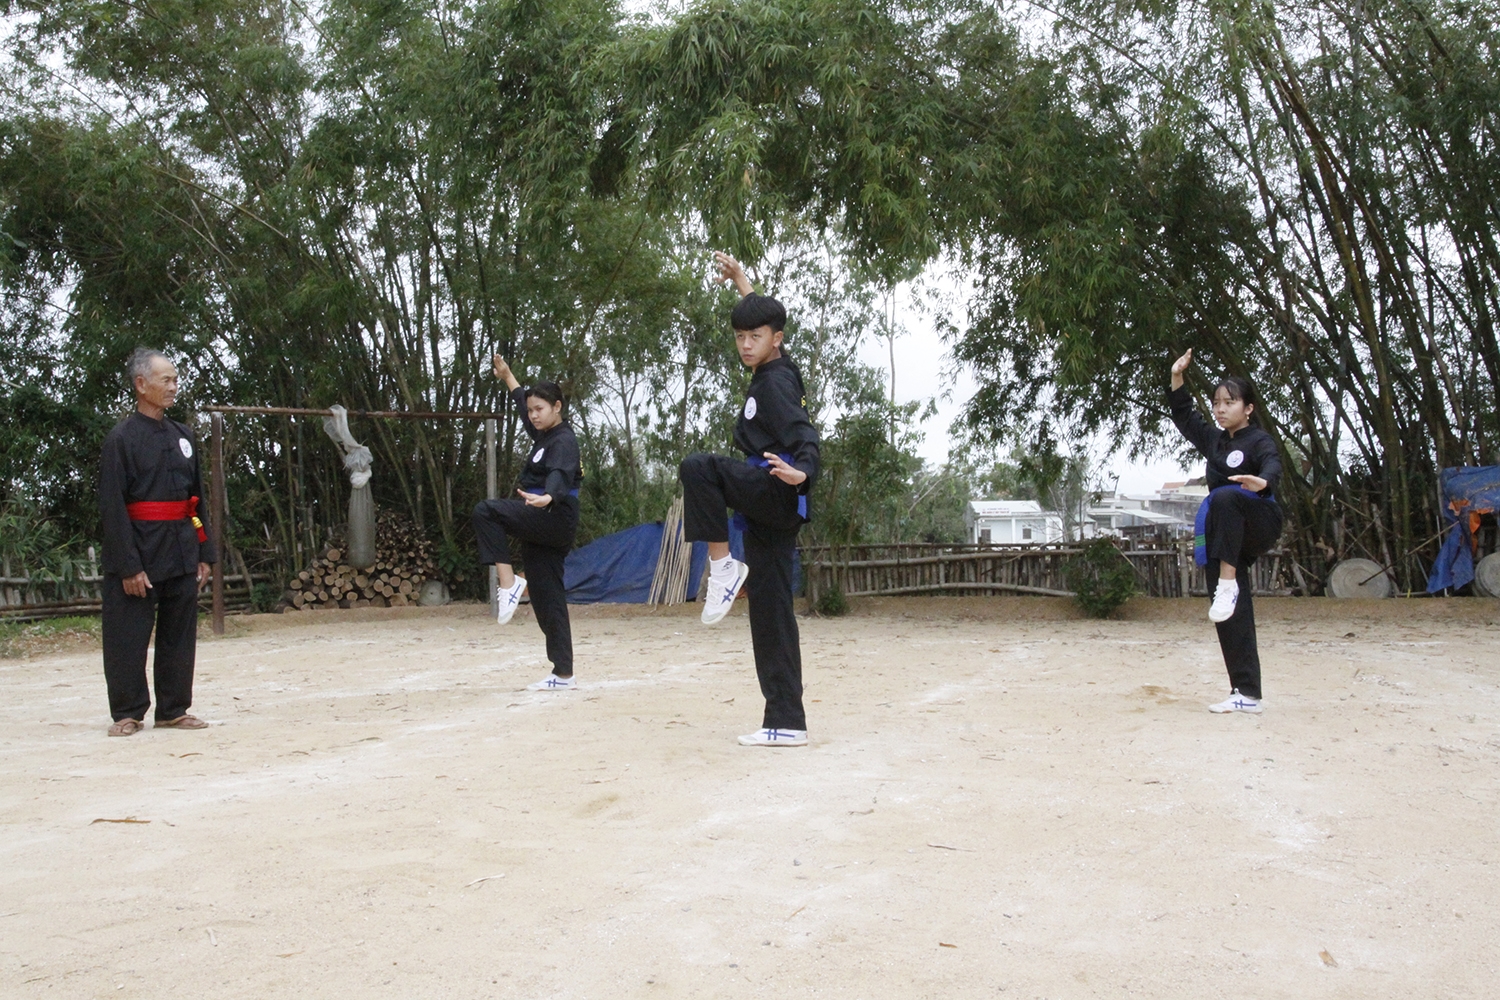 Phong trào luyện tập võ cổ truyền ở Bình Định rất phát triển